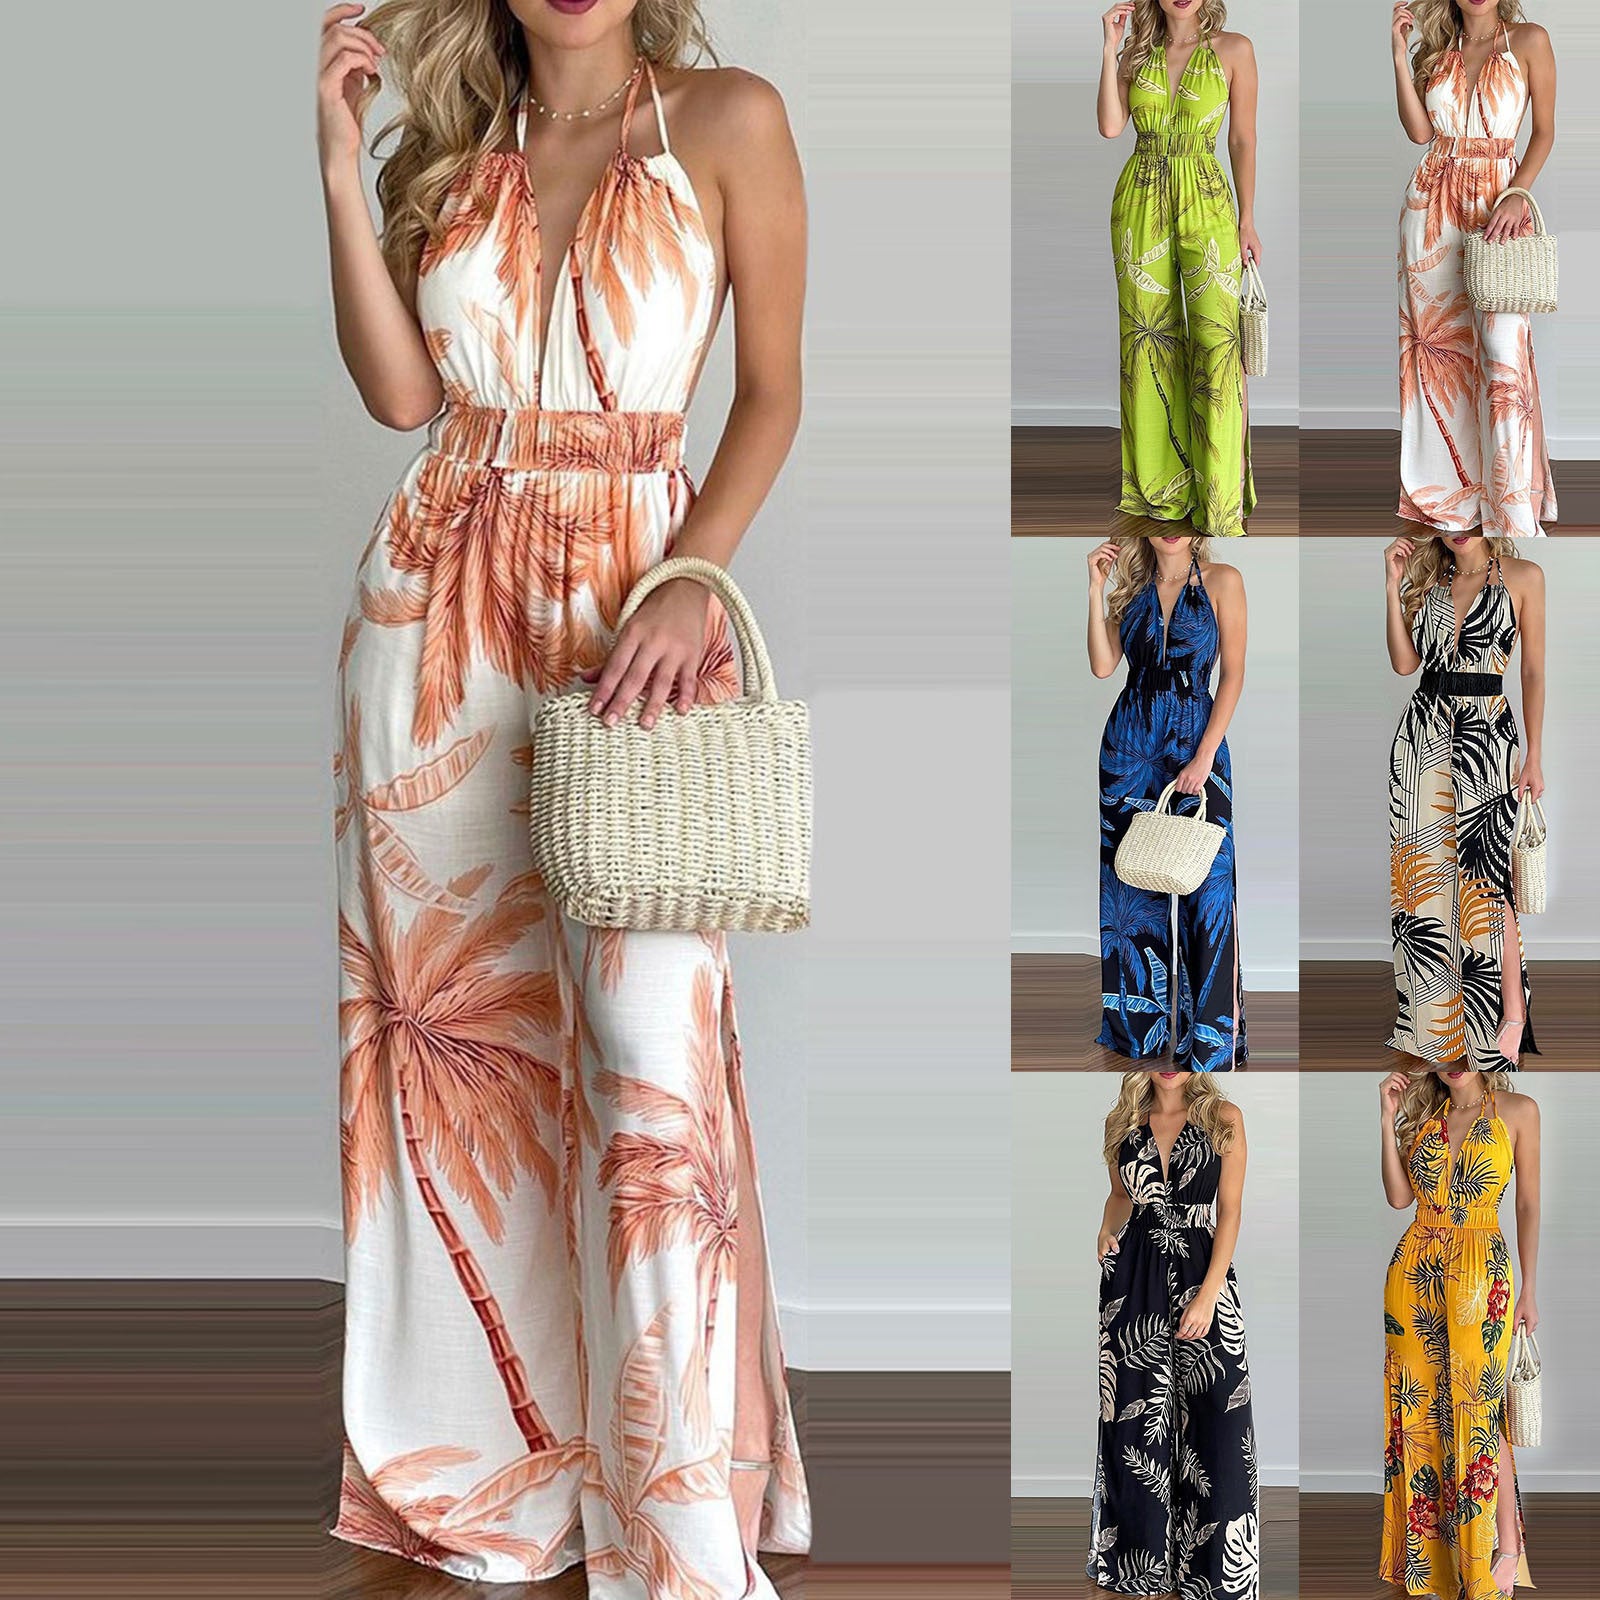 Women's Beautiful New Digital Printing Colorful Dresses